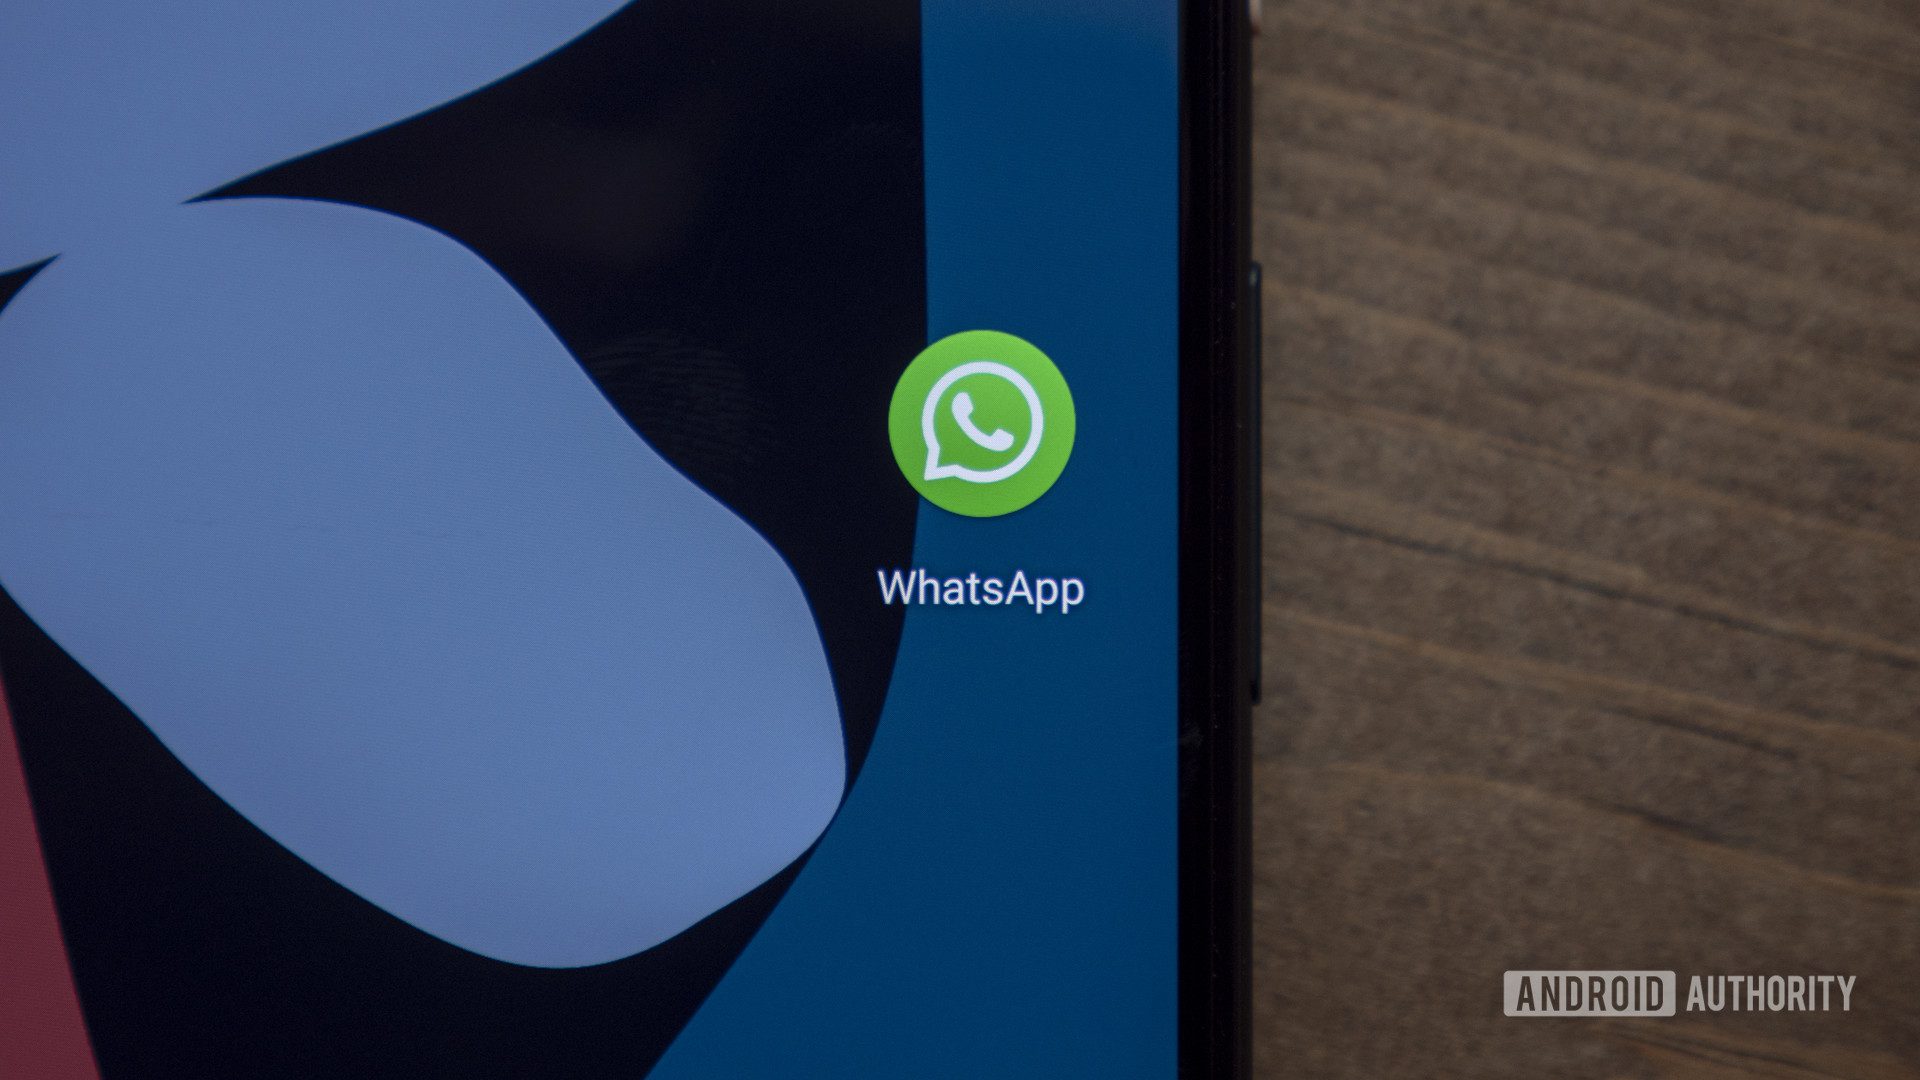 WhatsApp gizlice sizi dinliyor muydu?  Google bunun sadece bir hata olduğunu söylüyor